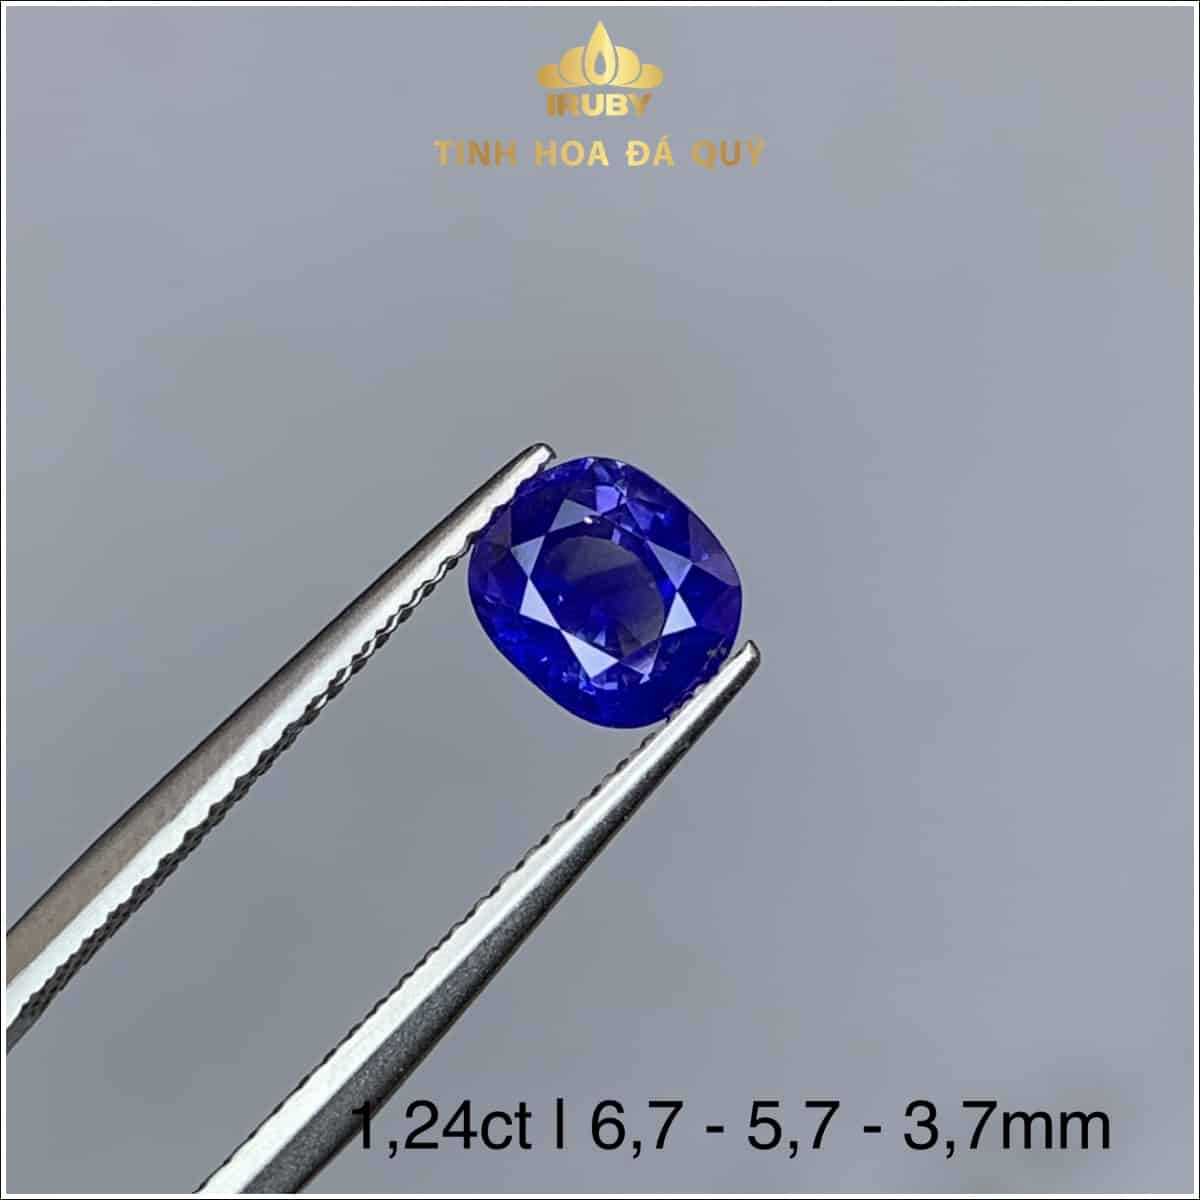 Đá Sapphire xanh lam hoàng gia 1,24ct - IRSP 235124 hình ảnh 3